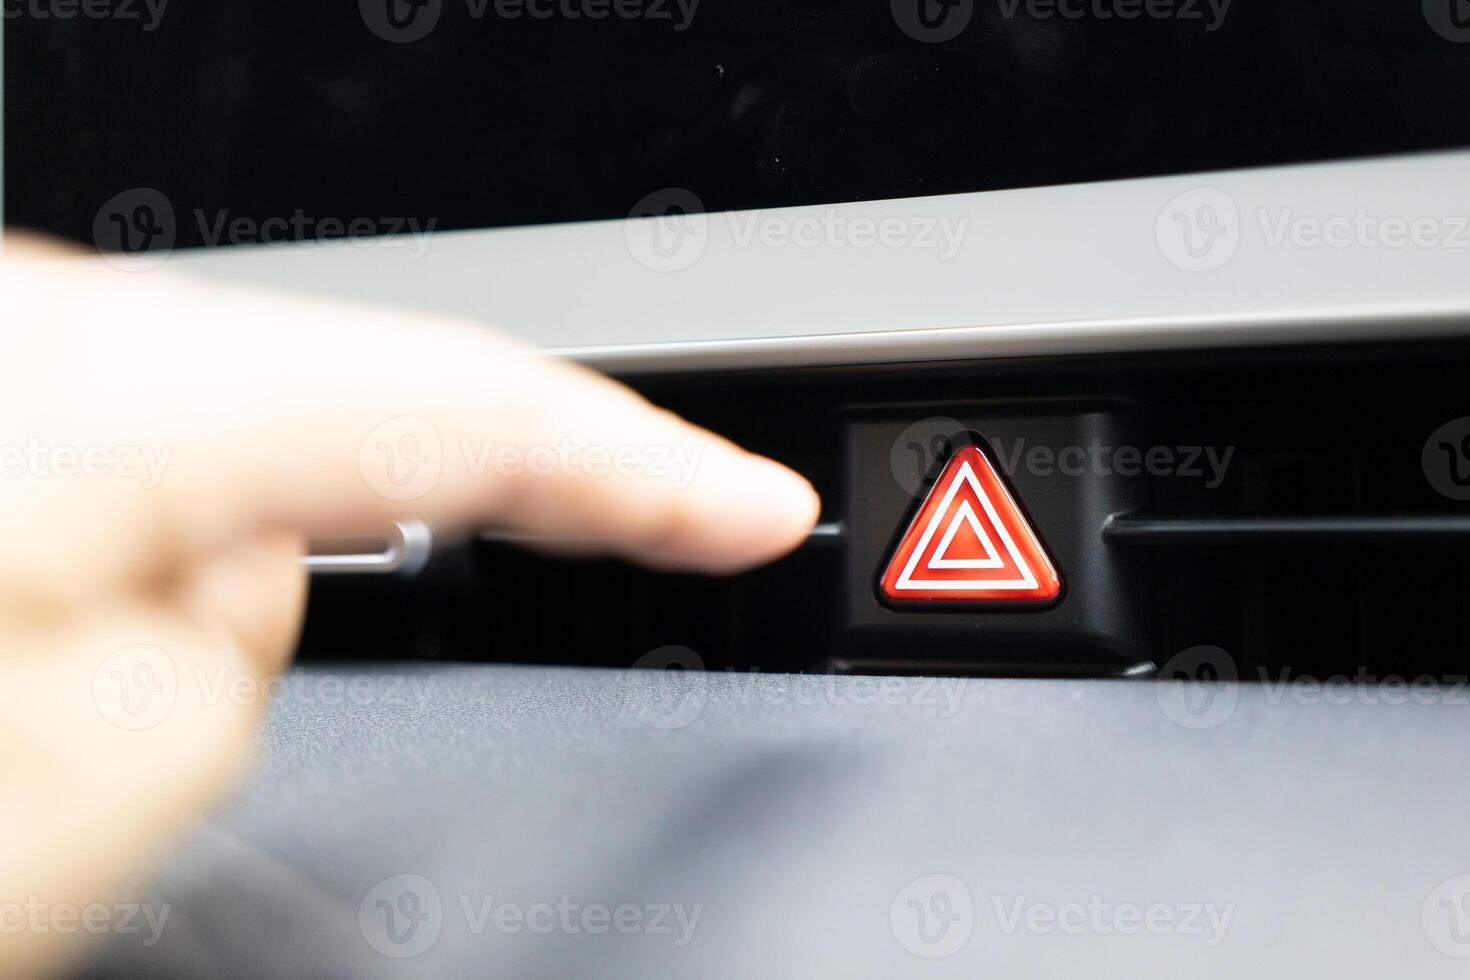 persen de noodgeval hou op knop in de auto. auto noodgeval waarschuwing licht knop in voorkant auto troosten foto